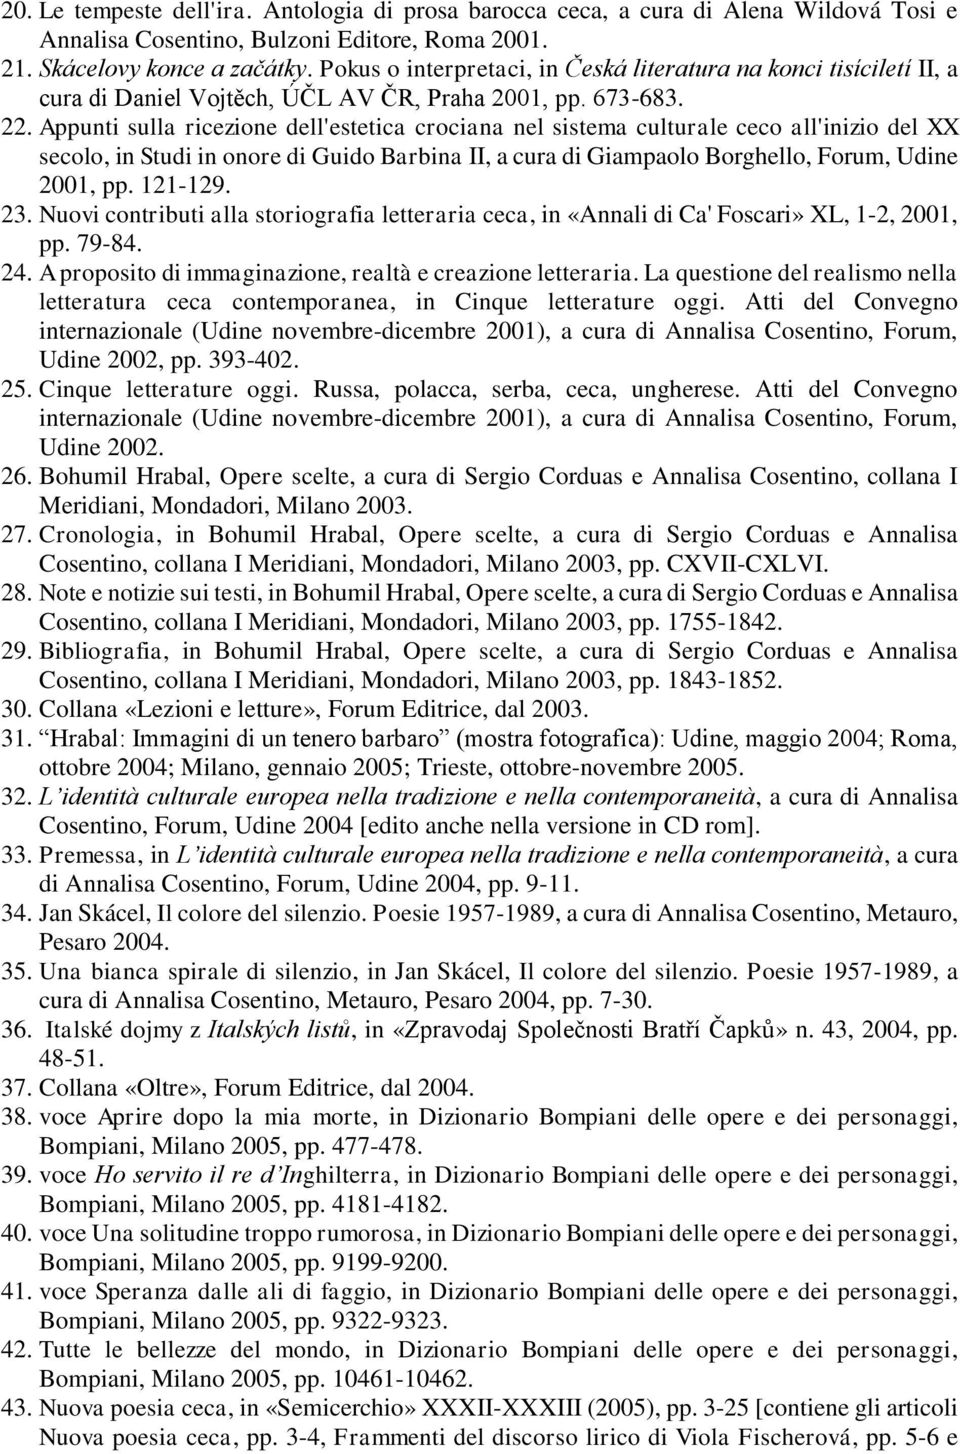 Appunti sulla ricezione dell'estetica crociana nel sistema culturale ceco all'inizio del XX secolo, in Studi in onore di Guido Barbina II, a cura di Giampaolo Borghello, Forum, Udine 2001, pp.